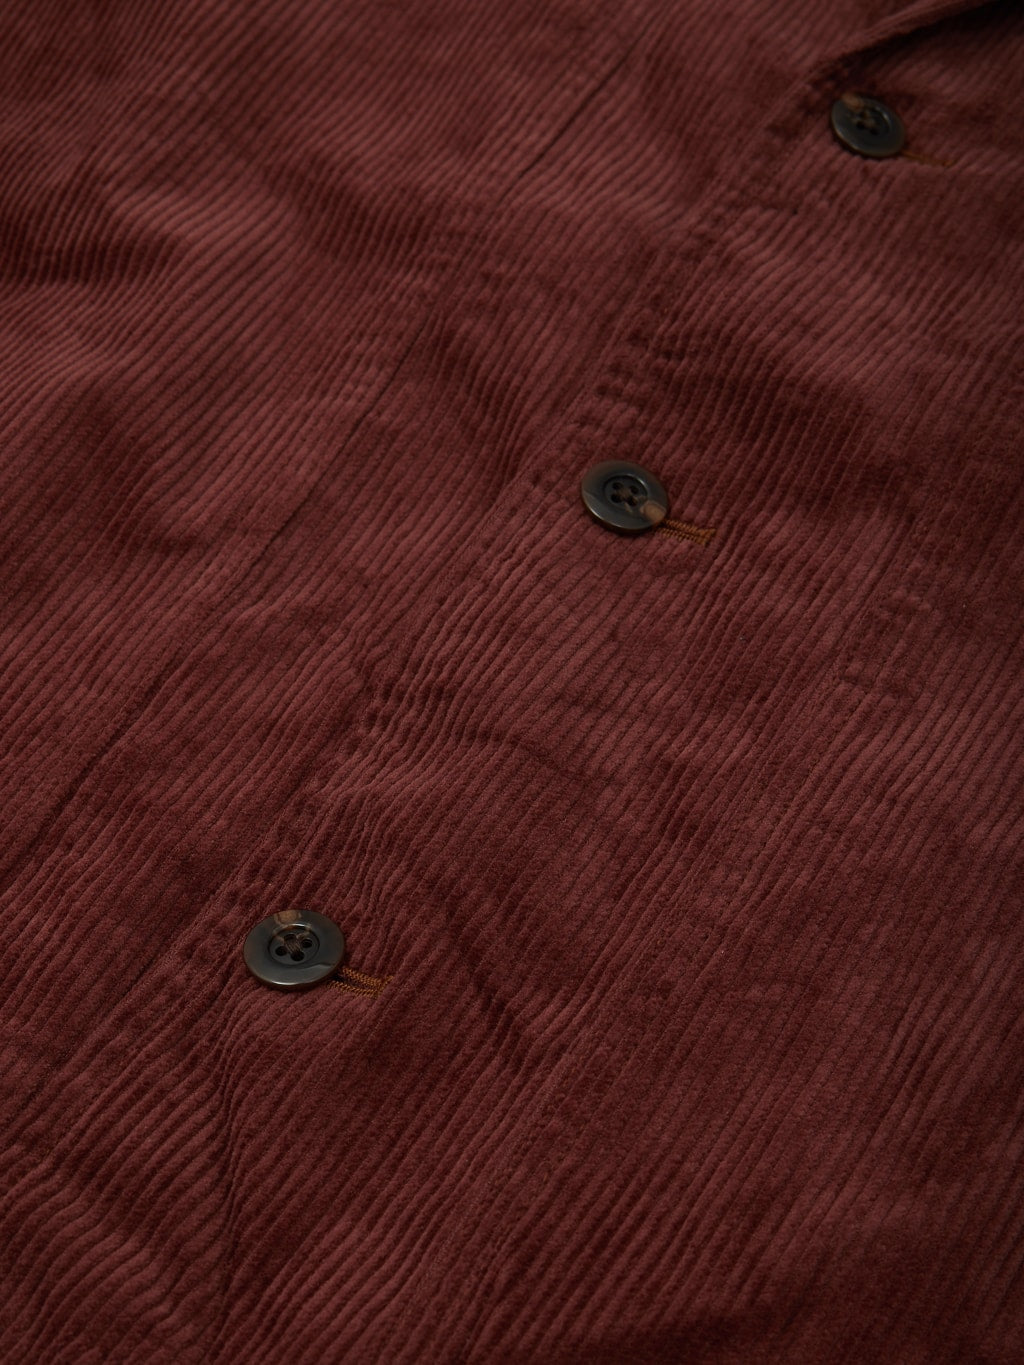 Tanuki Sazanami Corduro mud Dyed brown Jacket urea buttons